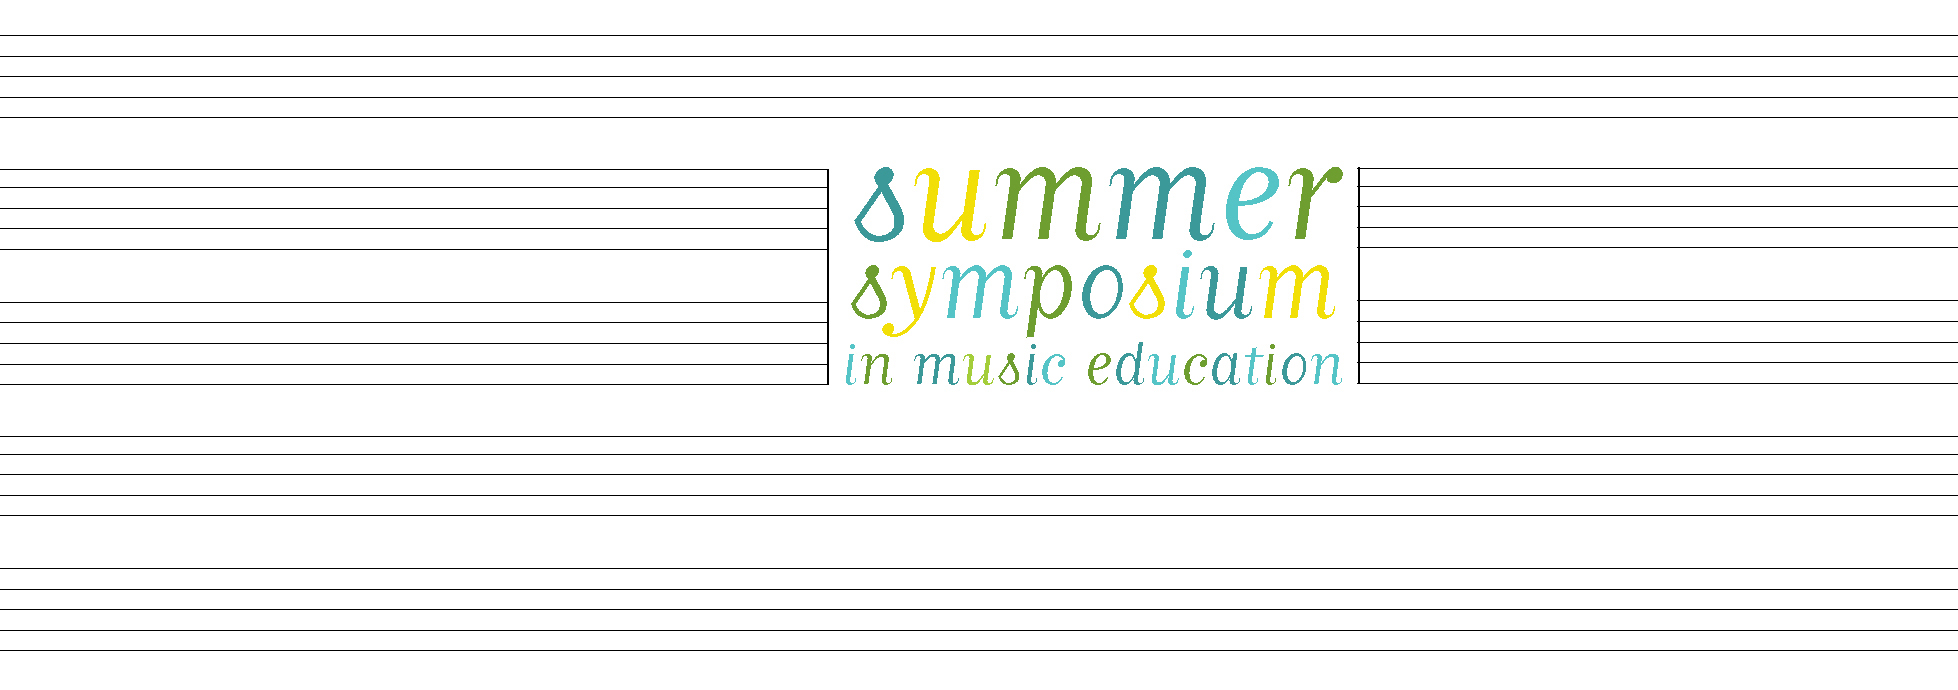 Summer Symposium